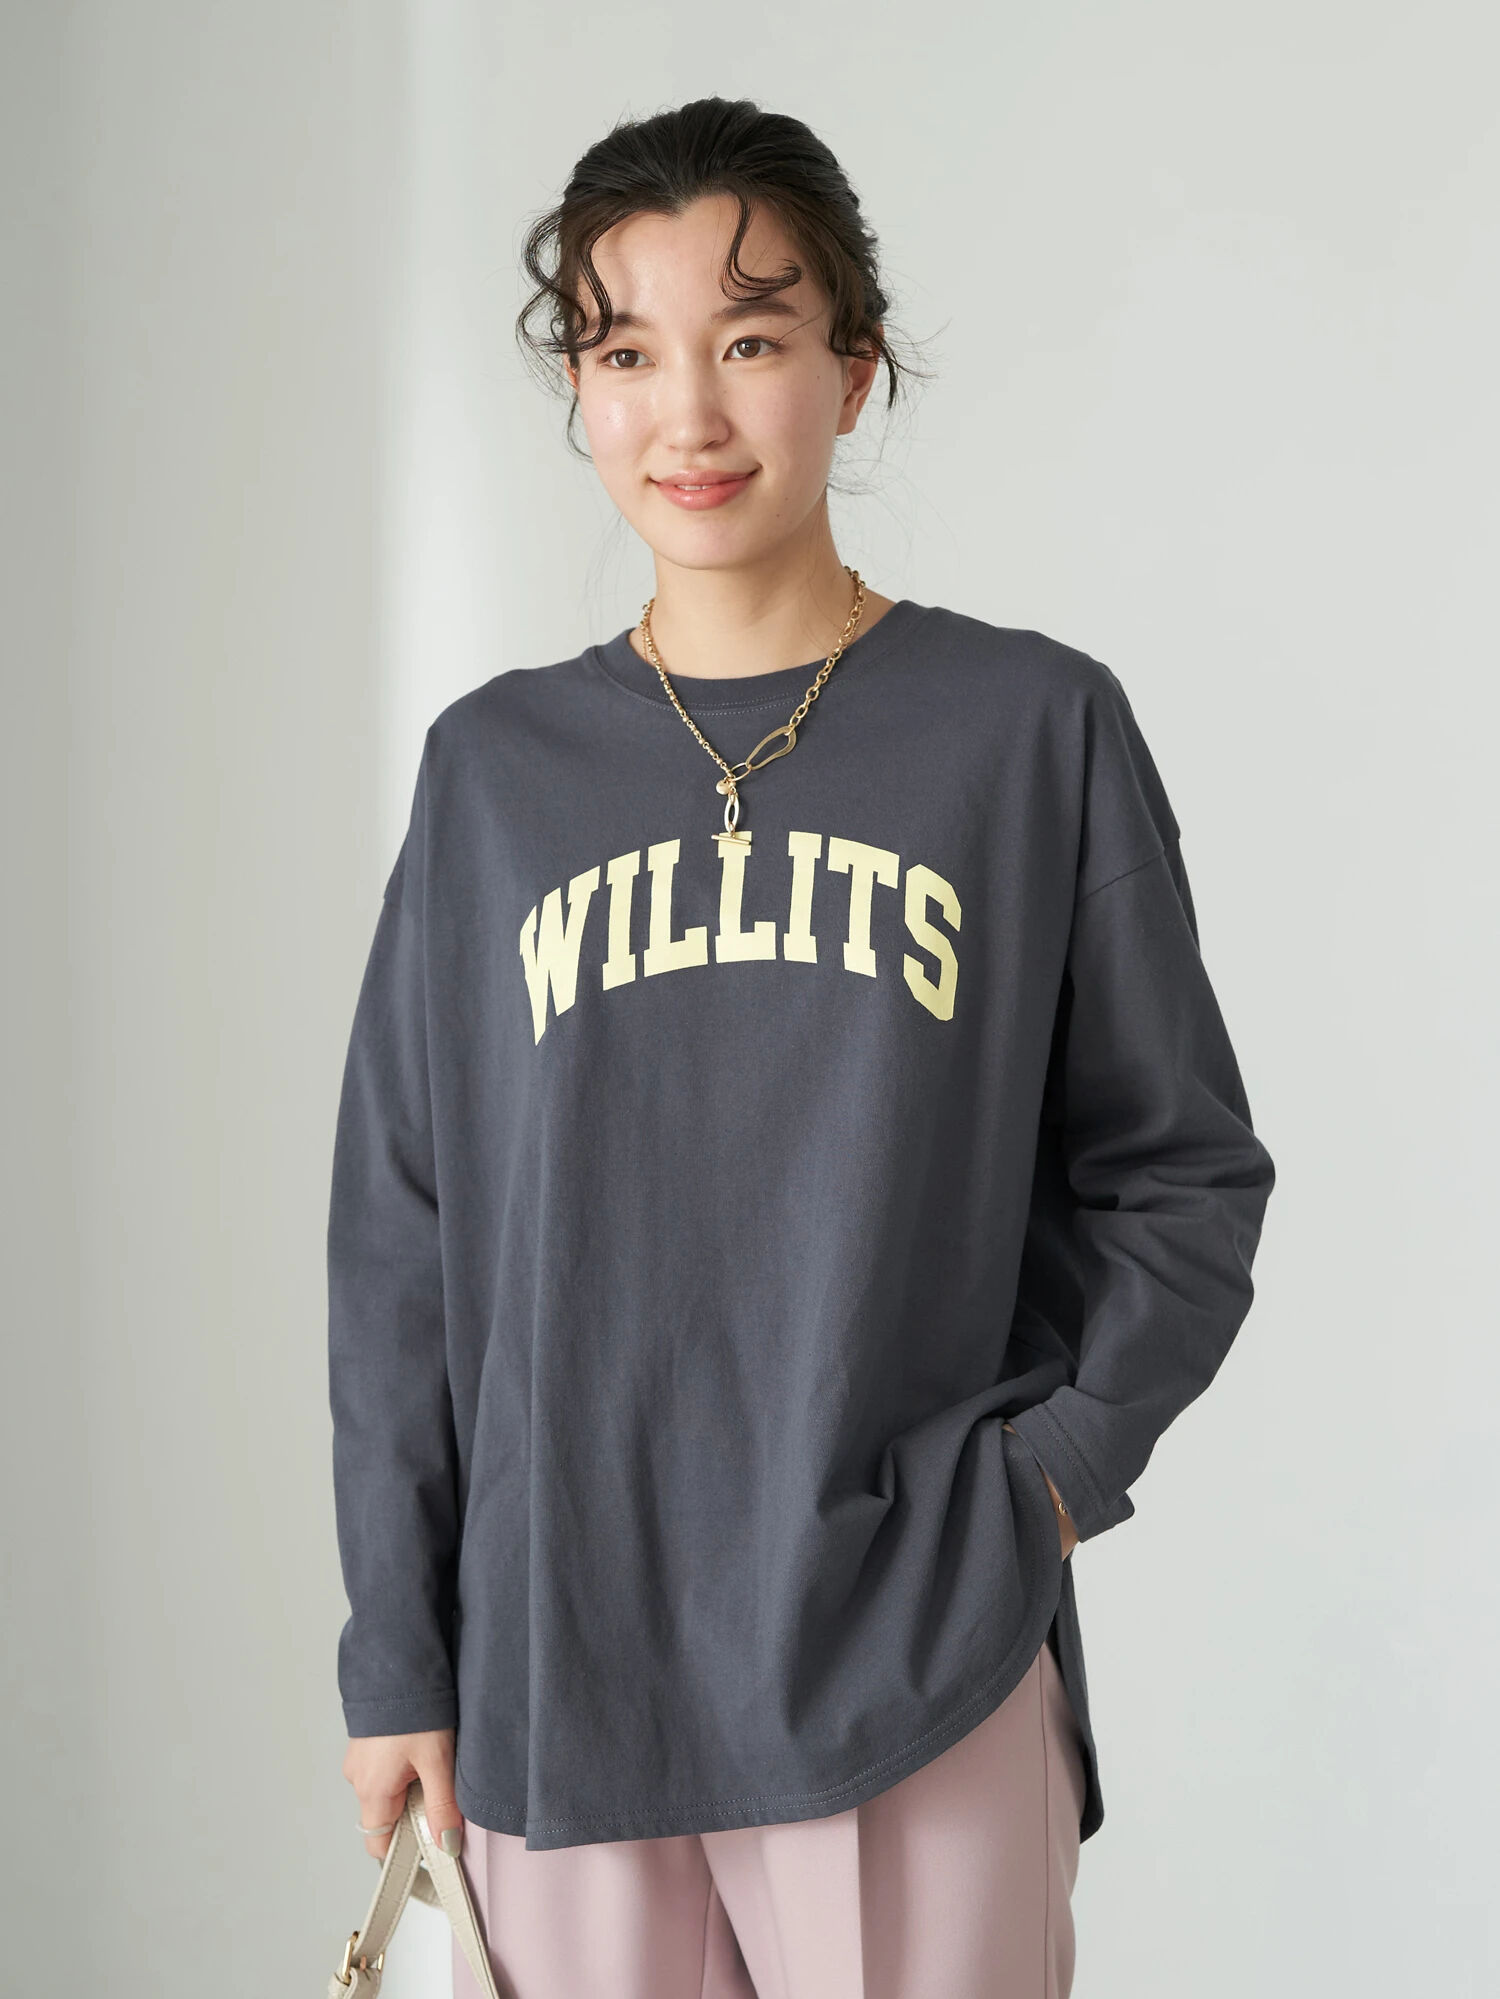 WILLITS Tシャツ / earth music&ecology(アースミュージックアンドエコロジー)のTシャツ ファッション通販のSTRIPE  CLUB